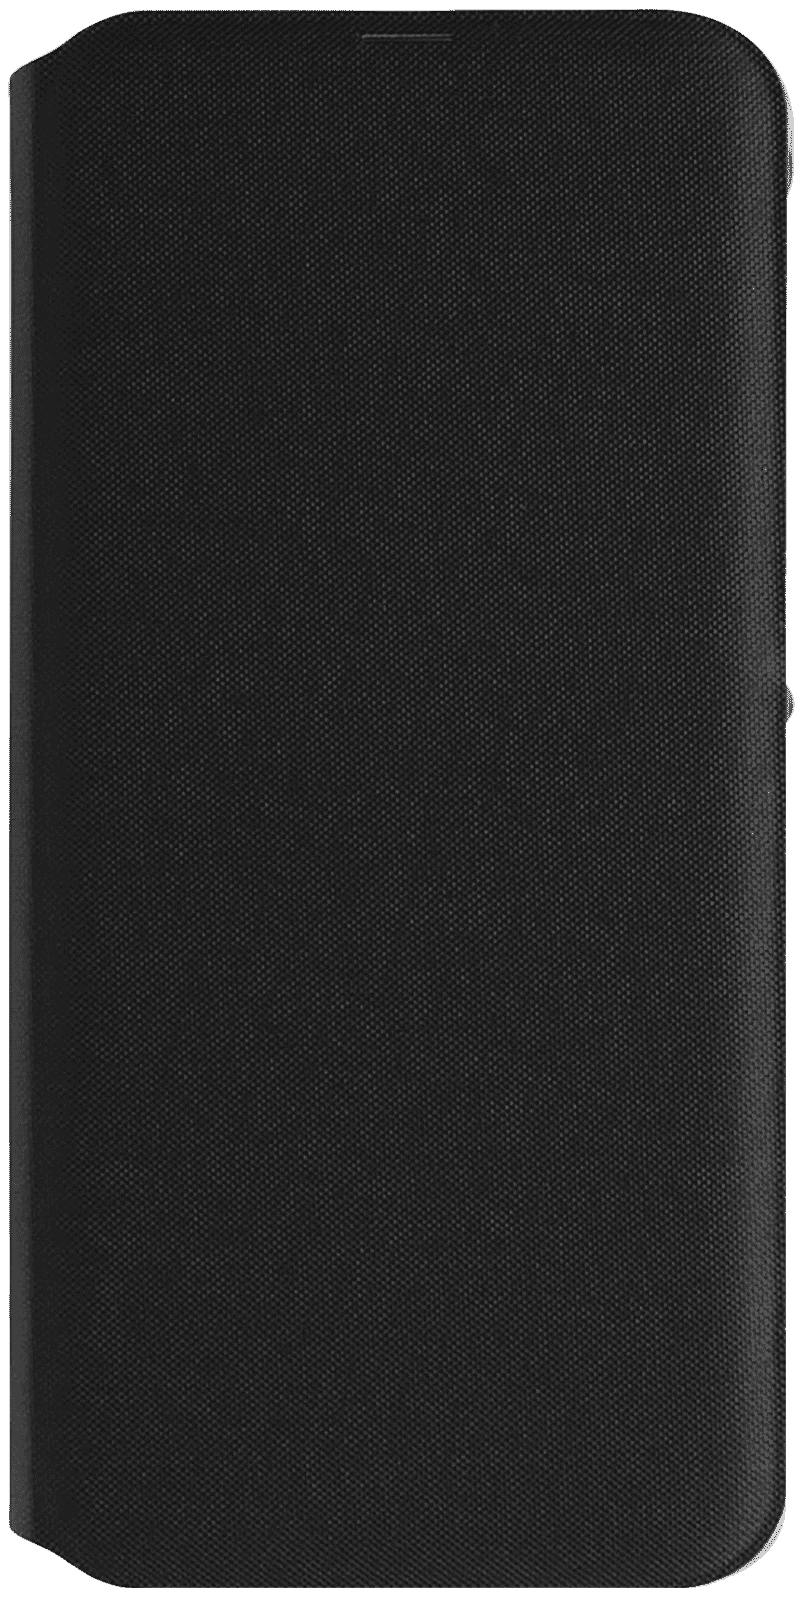 Etui folio Samsung Galaxy A40 noir